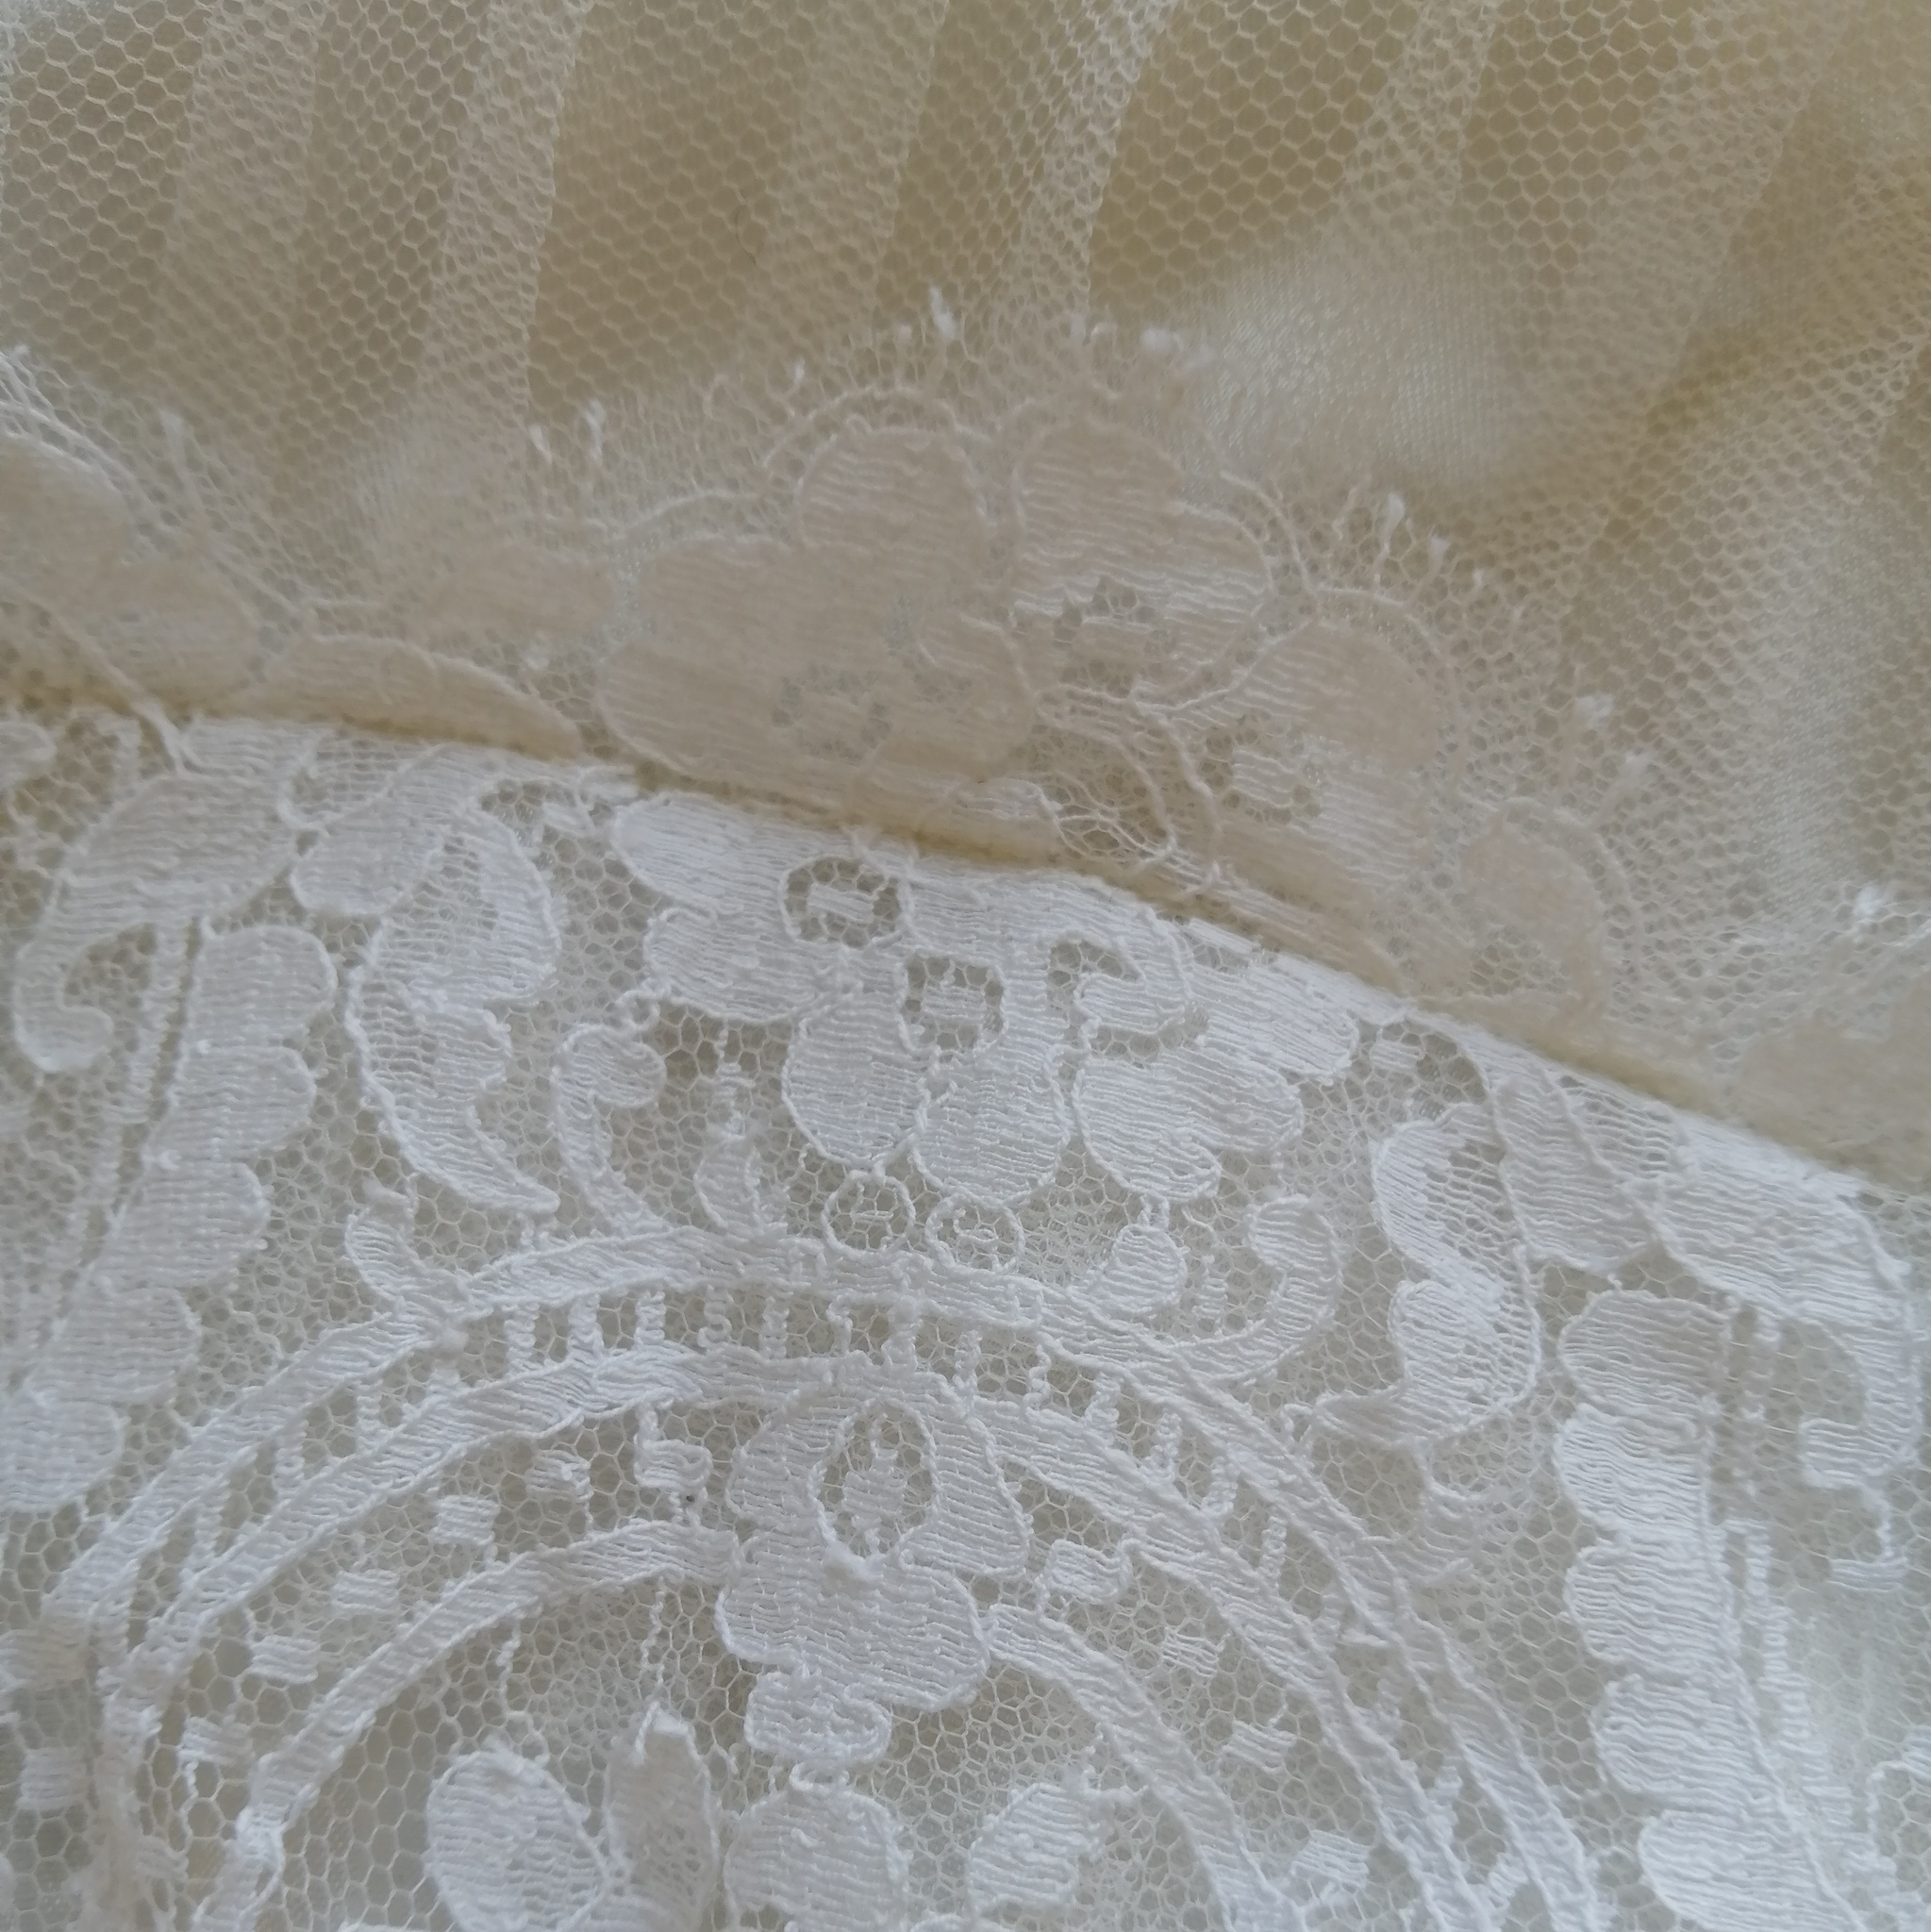 Vintage brudklänning 60-tal kort mycket spets 2 underkjolar lång ärm